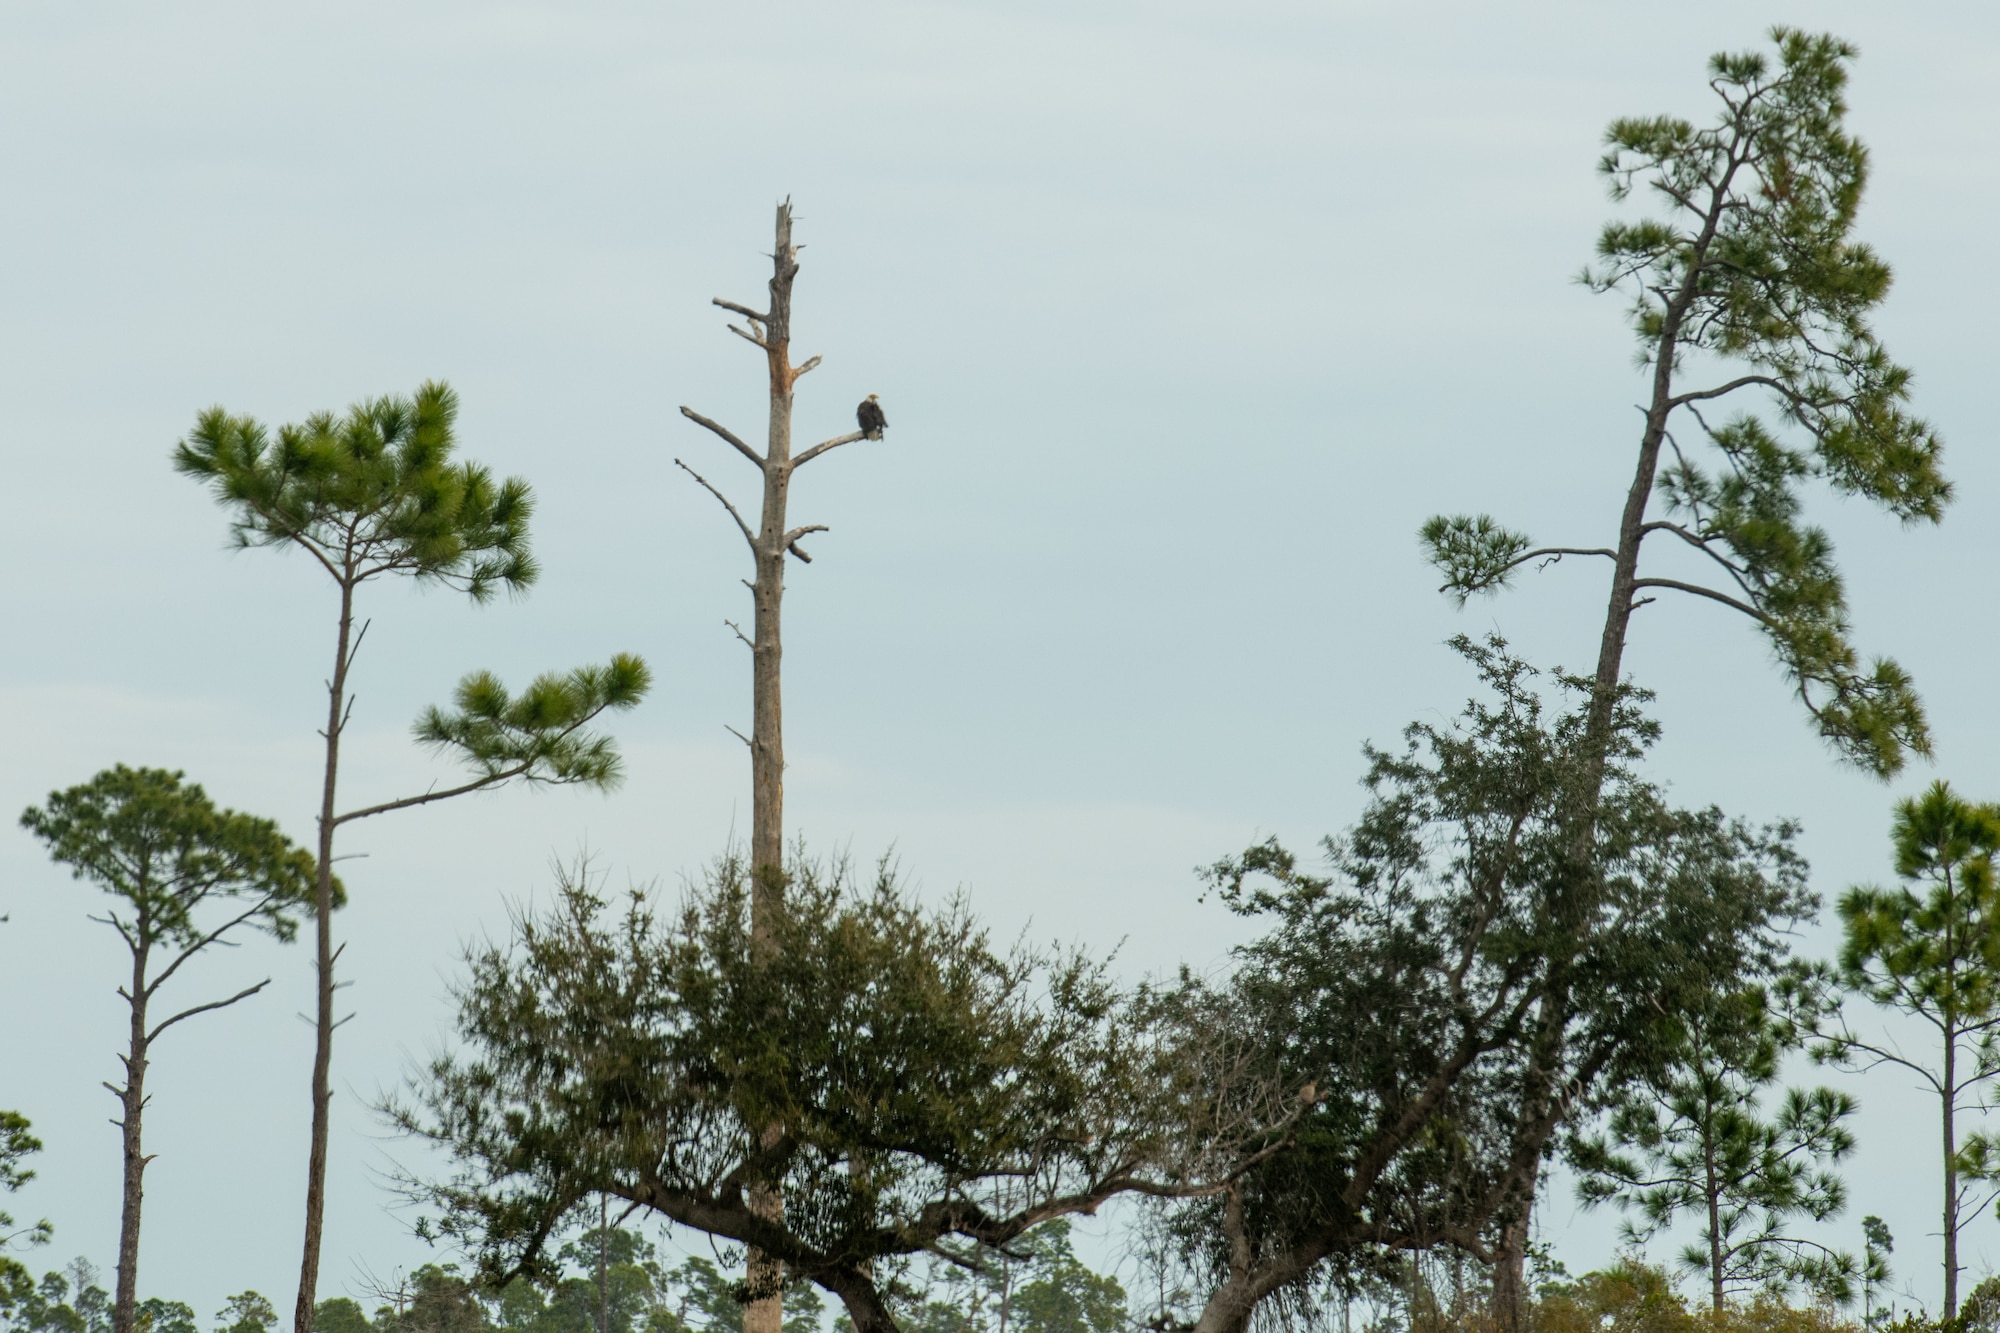 A bald eagle sits on a tree limb